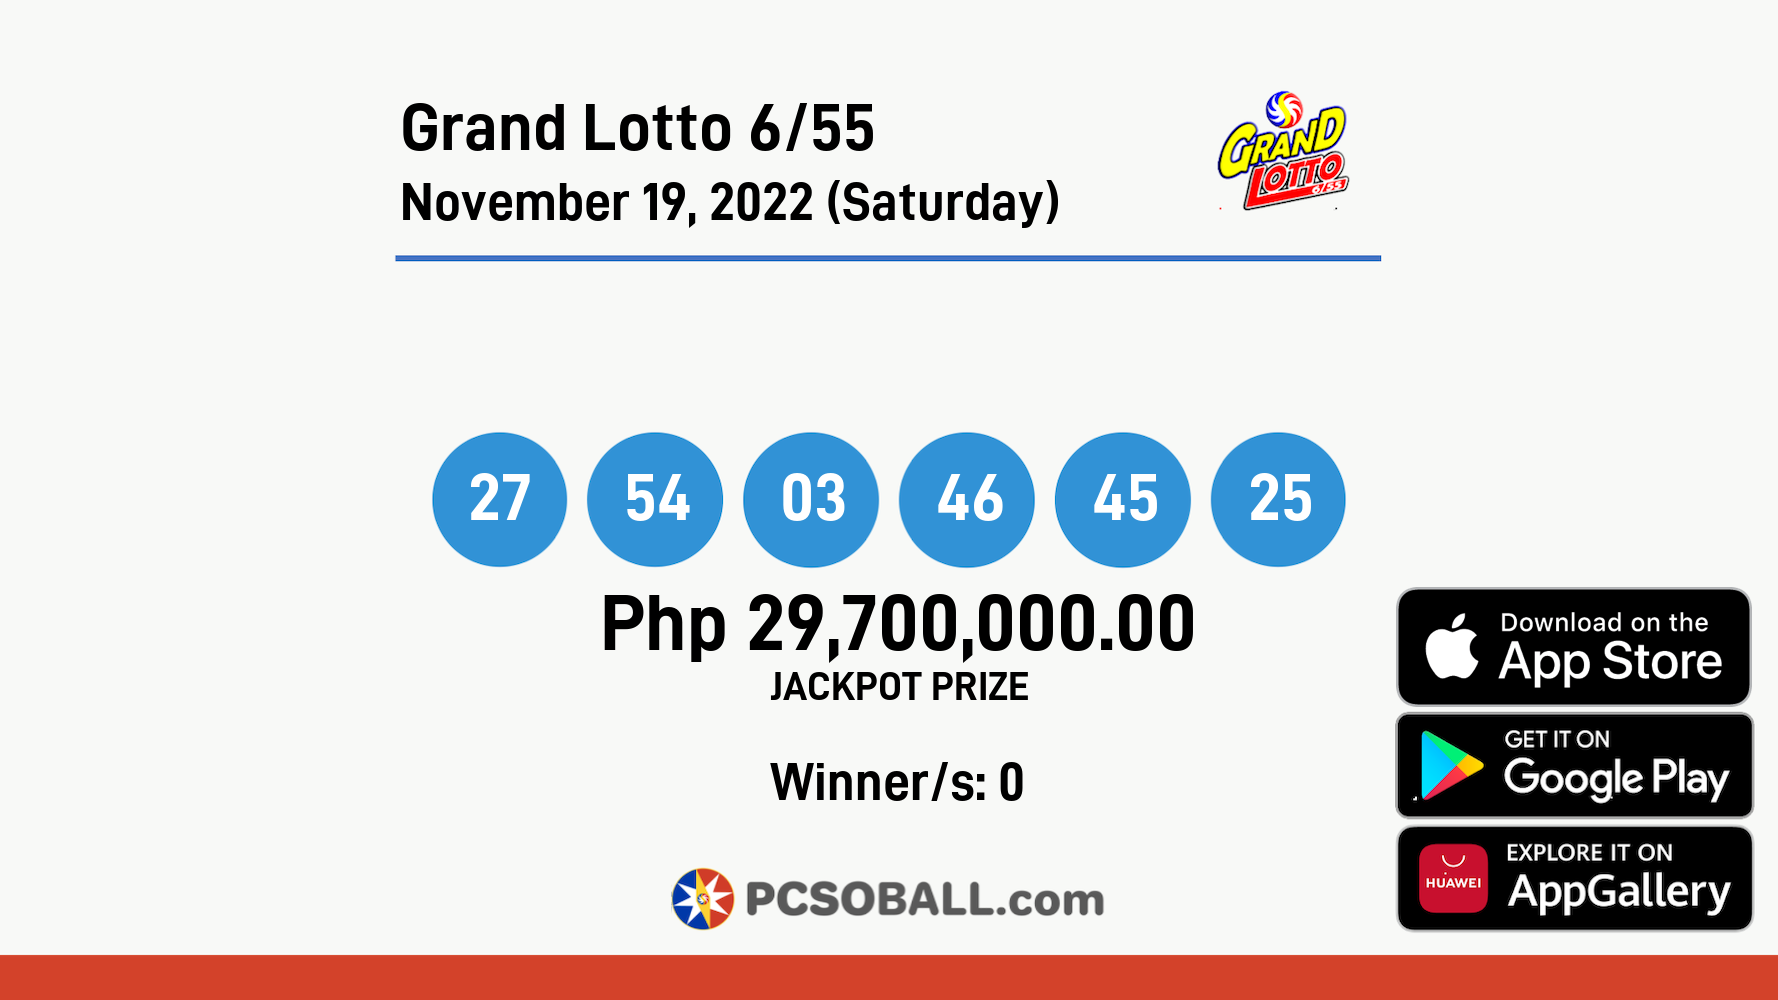 Grand Lotto 6/55 November 19, 2022 (Saturday) Result